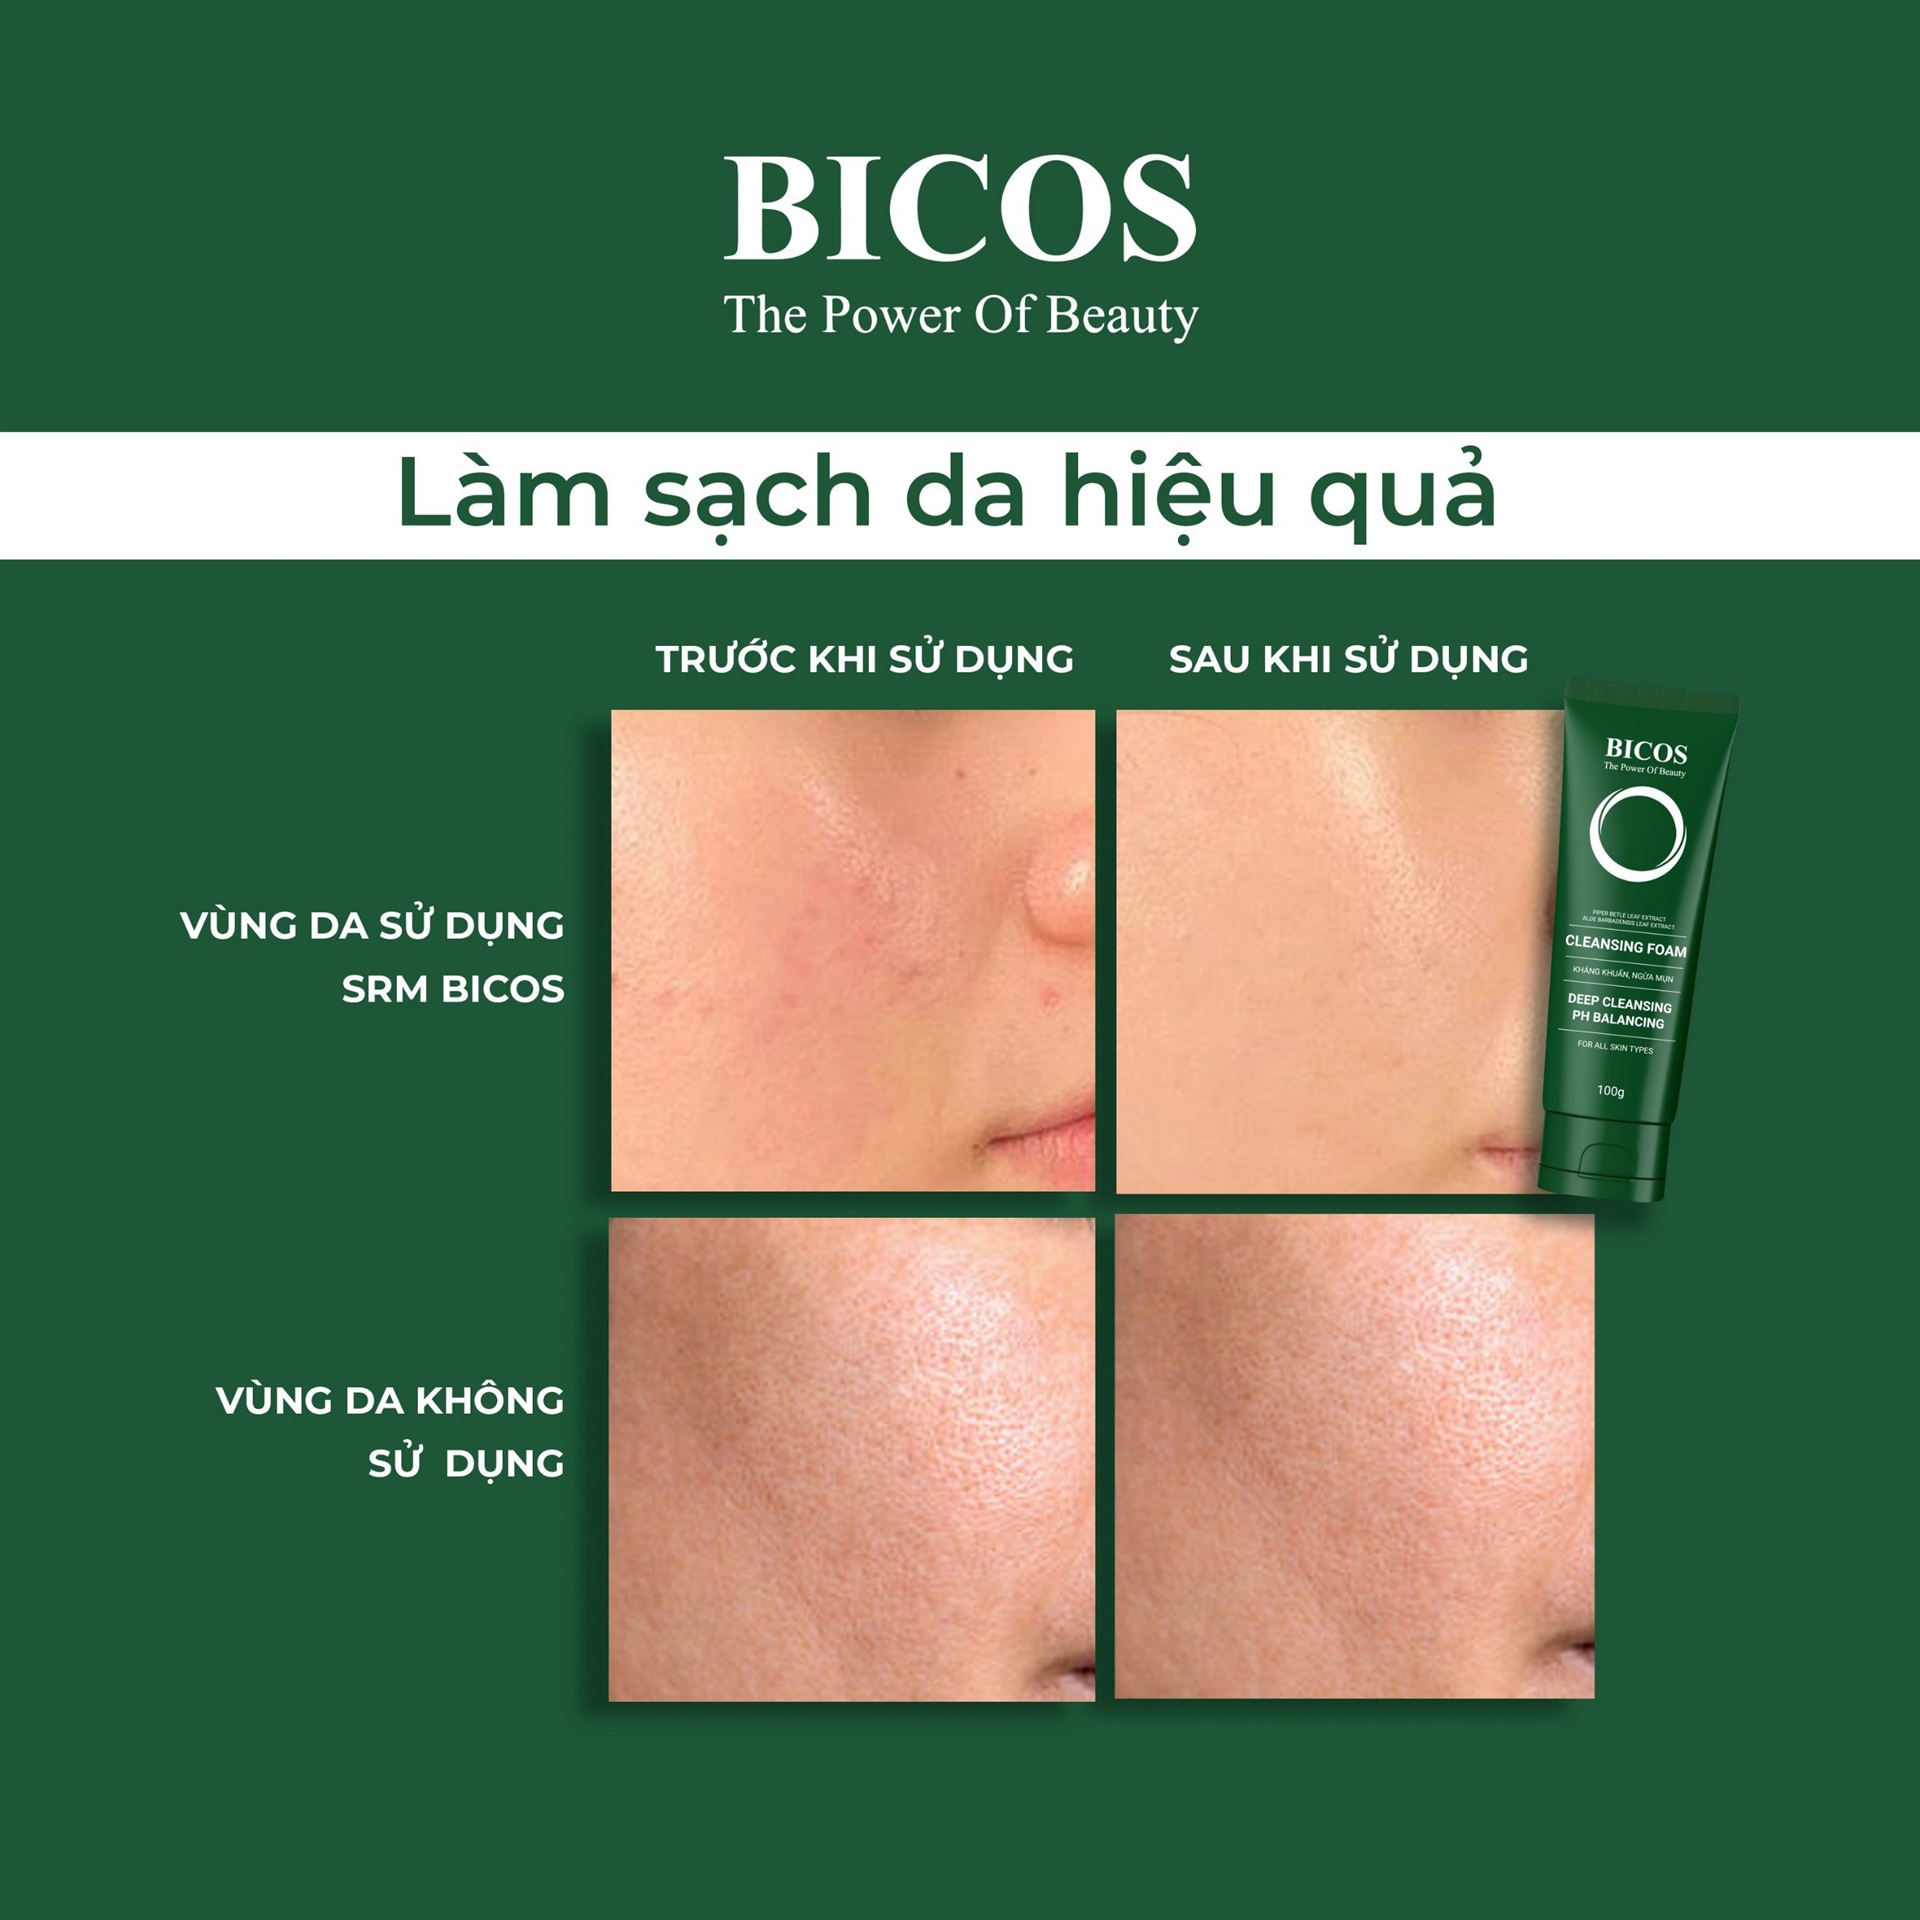 Hiệu quả làm sạch da khi sử dụng sản phẩm làm sạch BICOS